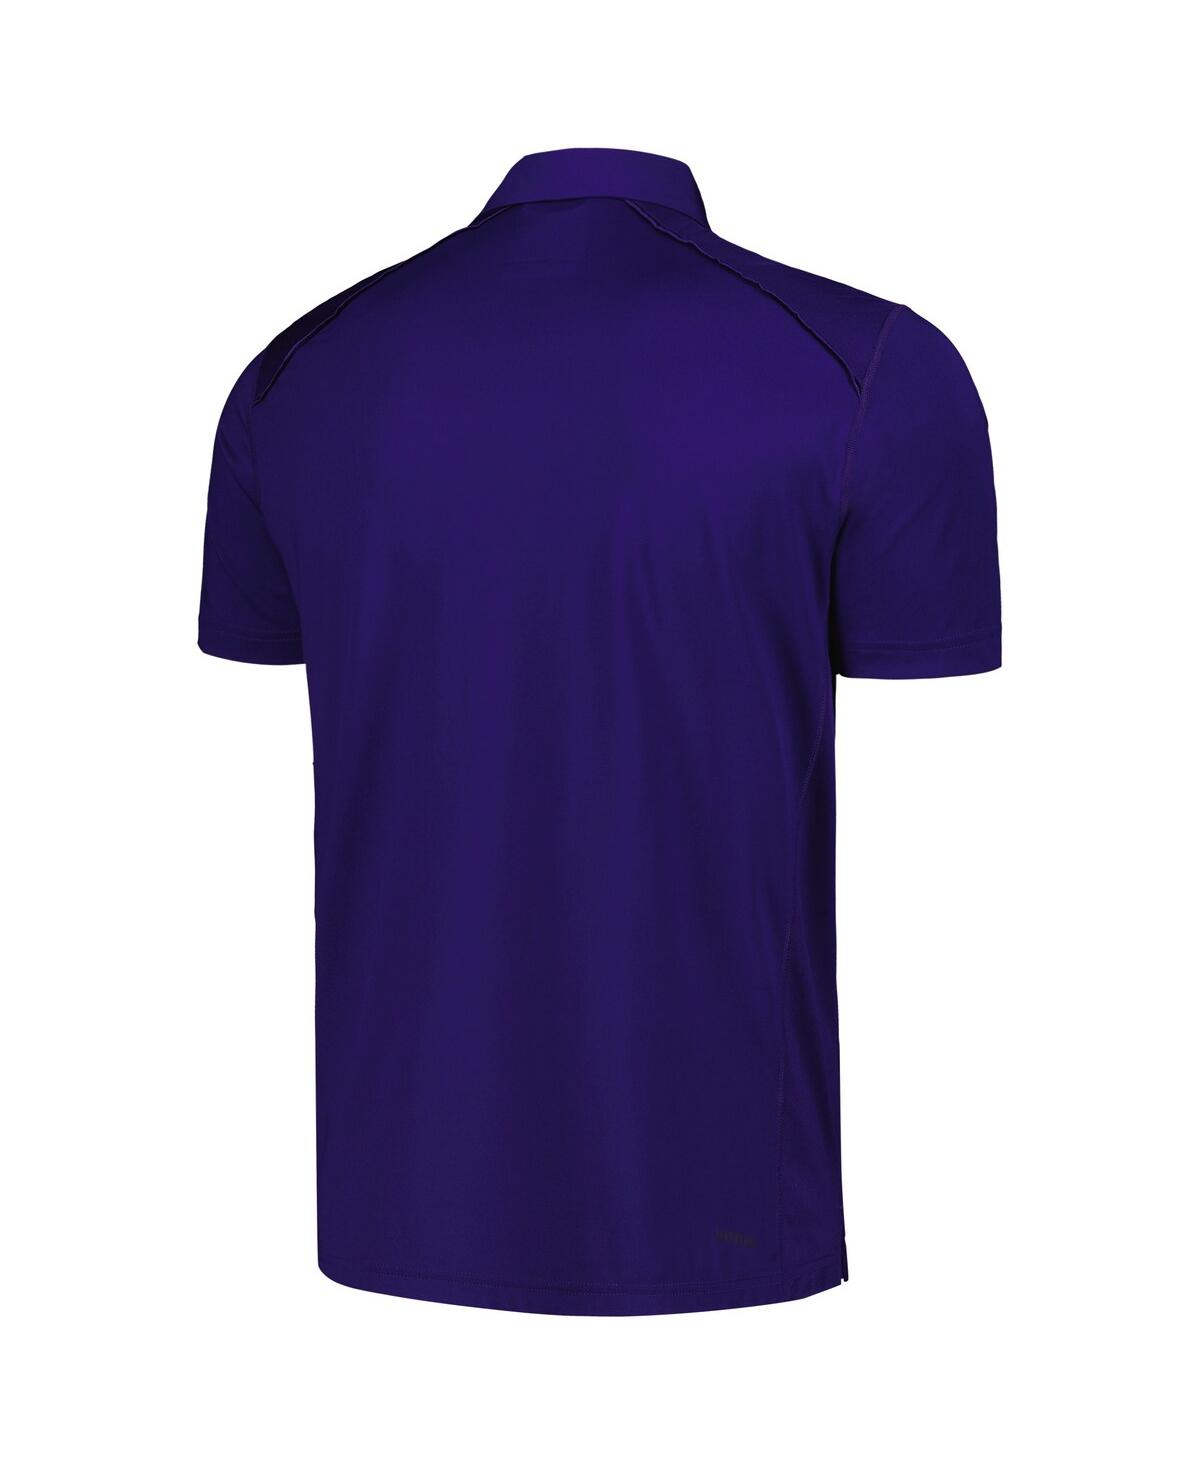 Shop Adidas Originals Men's Adidas Purple Ecu Pirates Classic Aeroready Polo Shirt